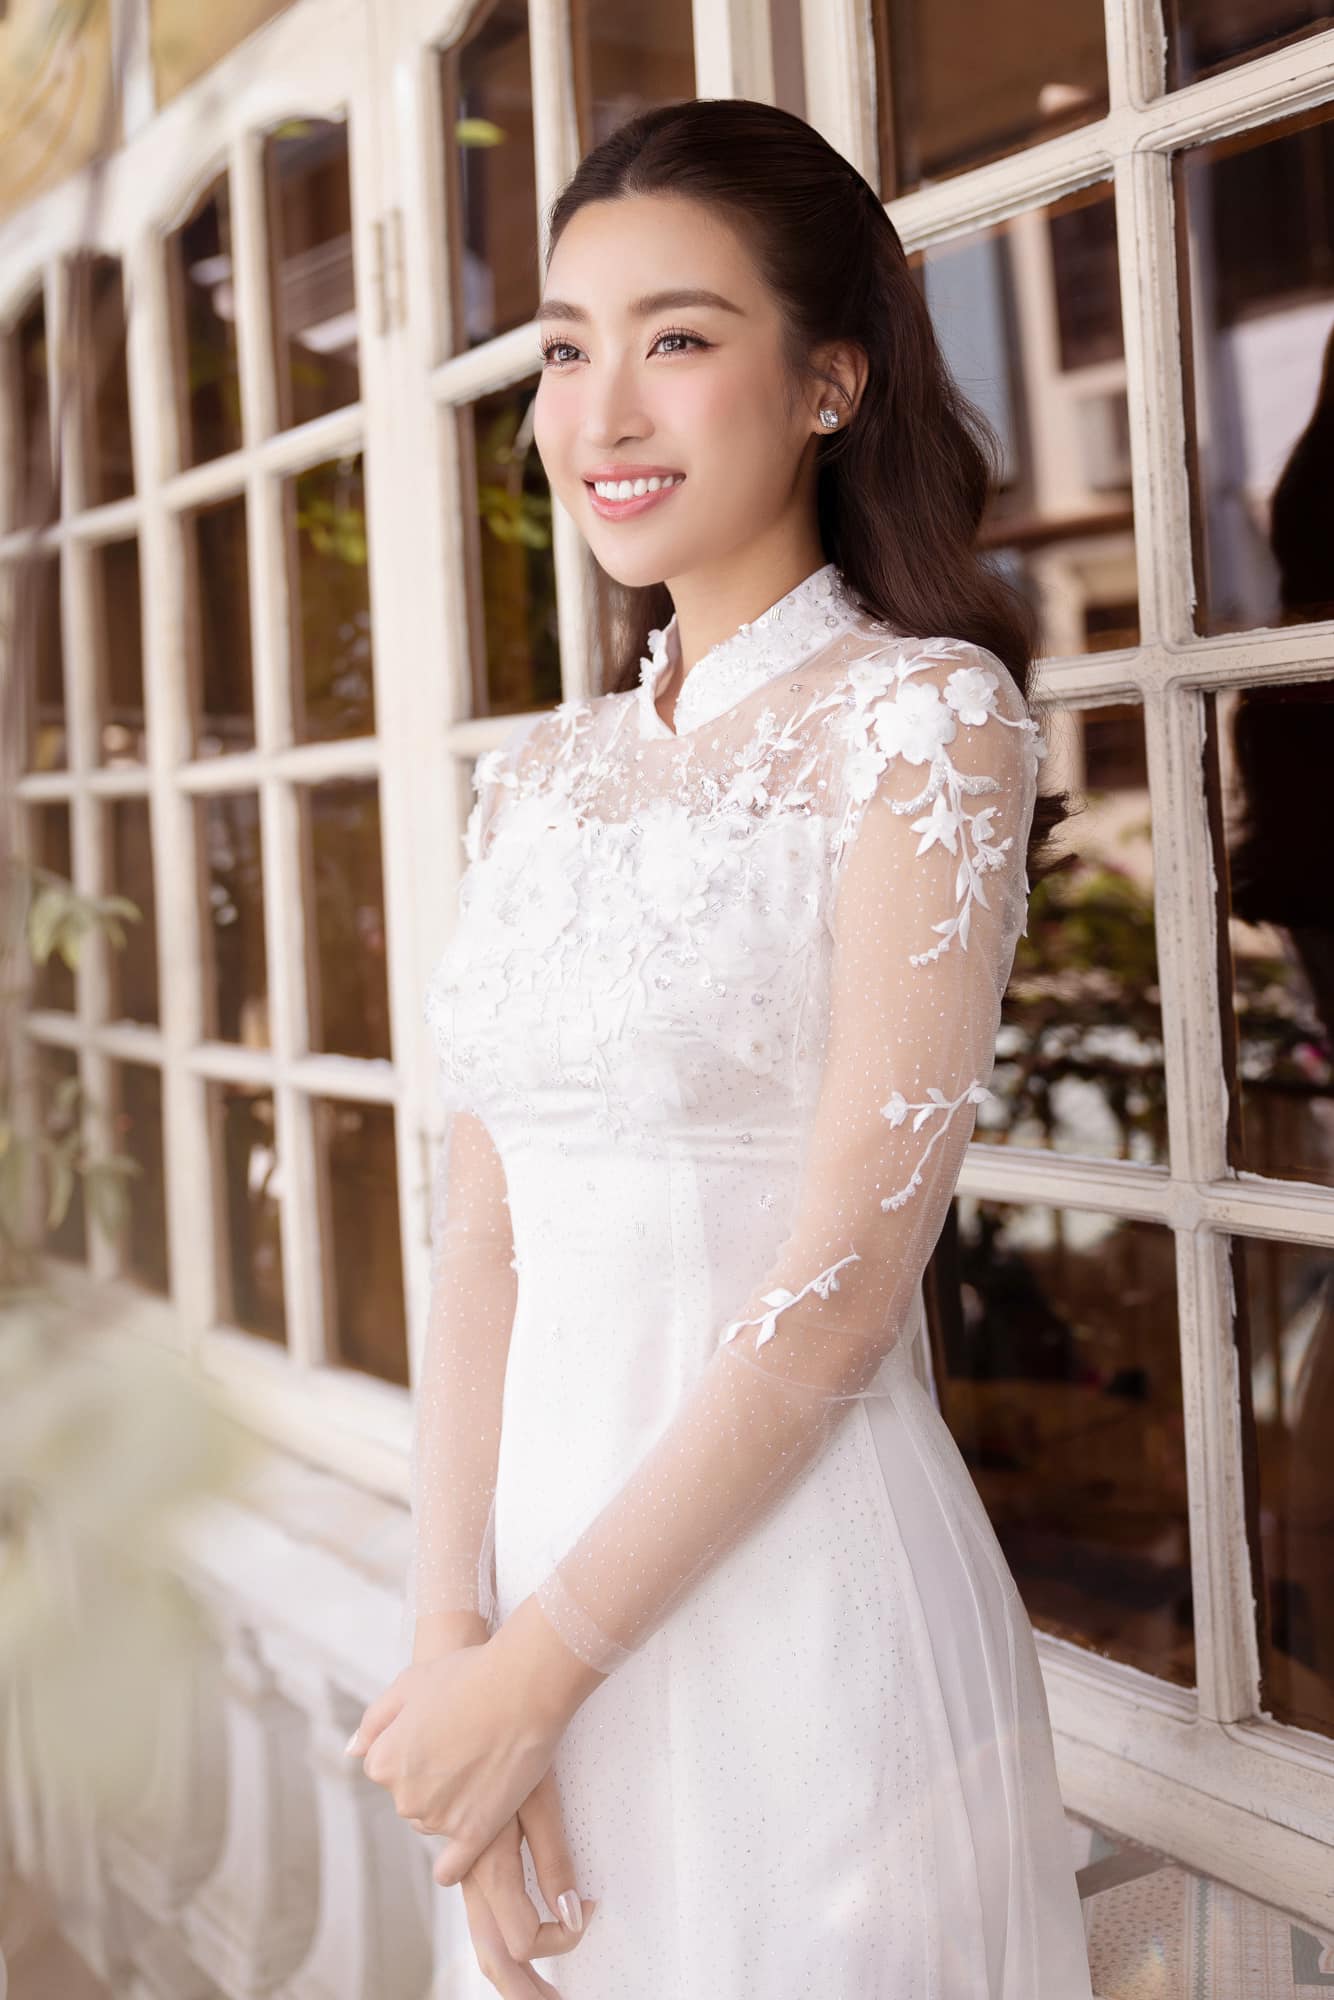 Hoa hậu Đỗ Mỹ Linh: “Quan hệ mẹ chồng – nàng dâu không phải là vấn đề khiến tôi lo lắng” - Ảnh 5.